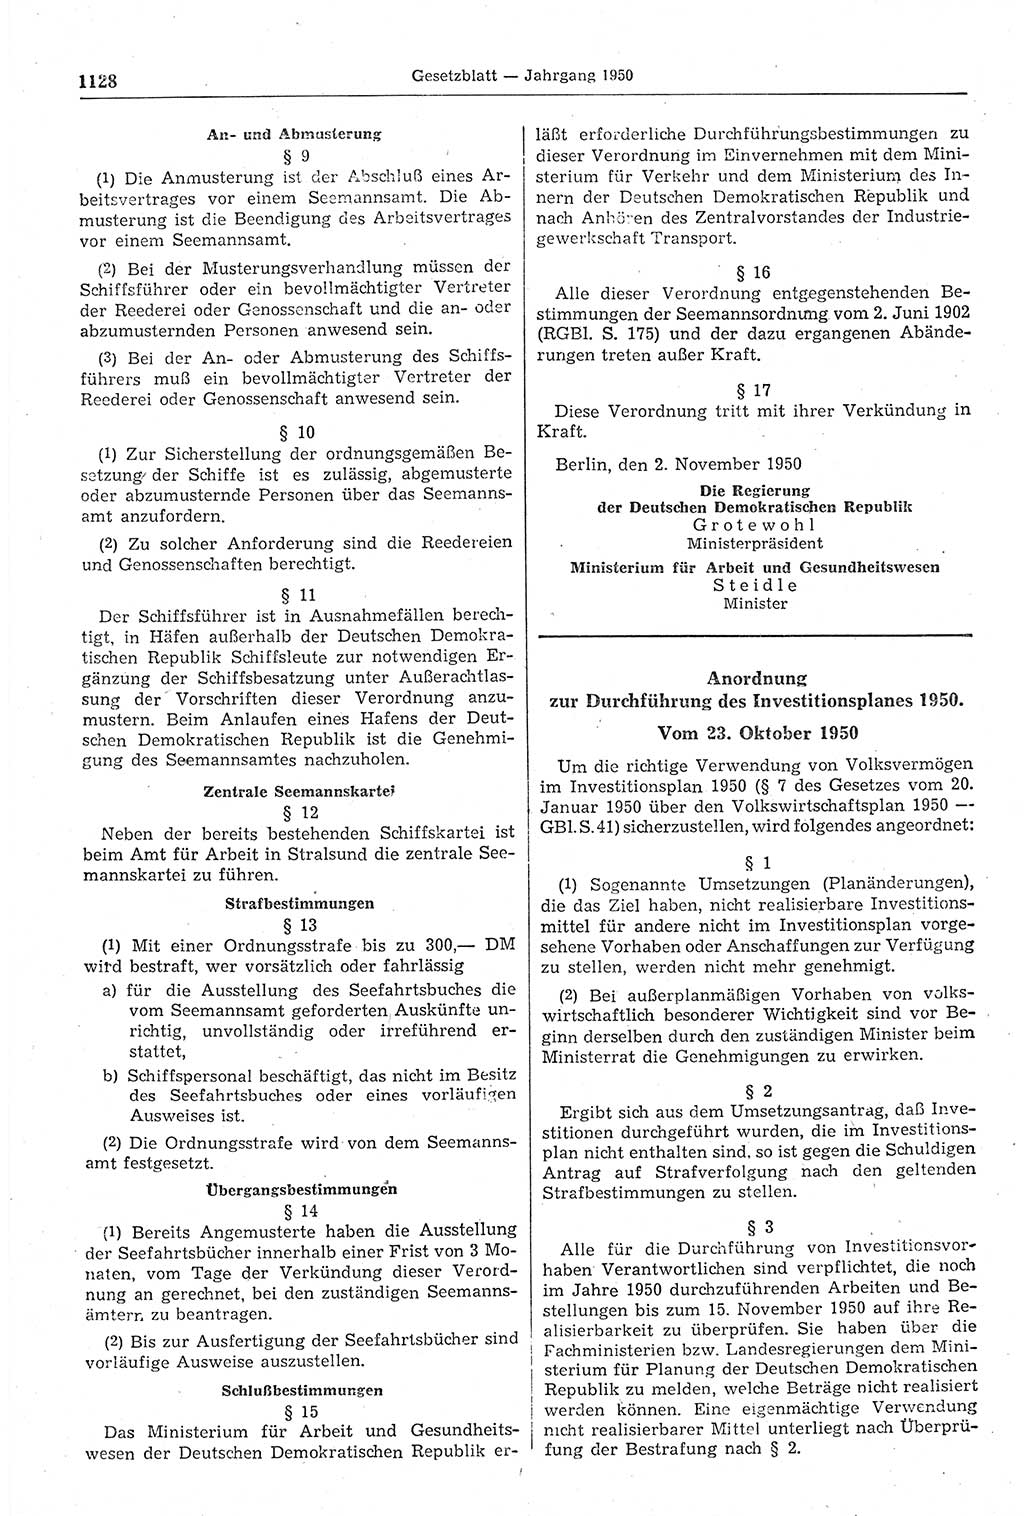 Gesetzblatt (GBl.) der Deutschen Demokratischen Republik (DDR) 1950, Seite 1128 (GBl. DDR 1950, S. 1128)